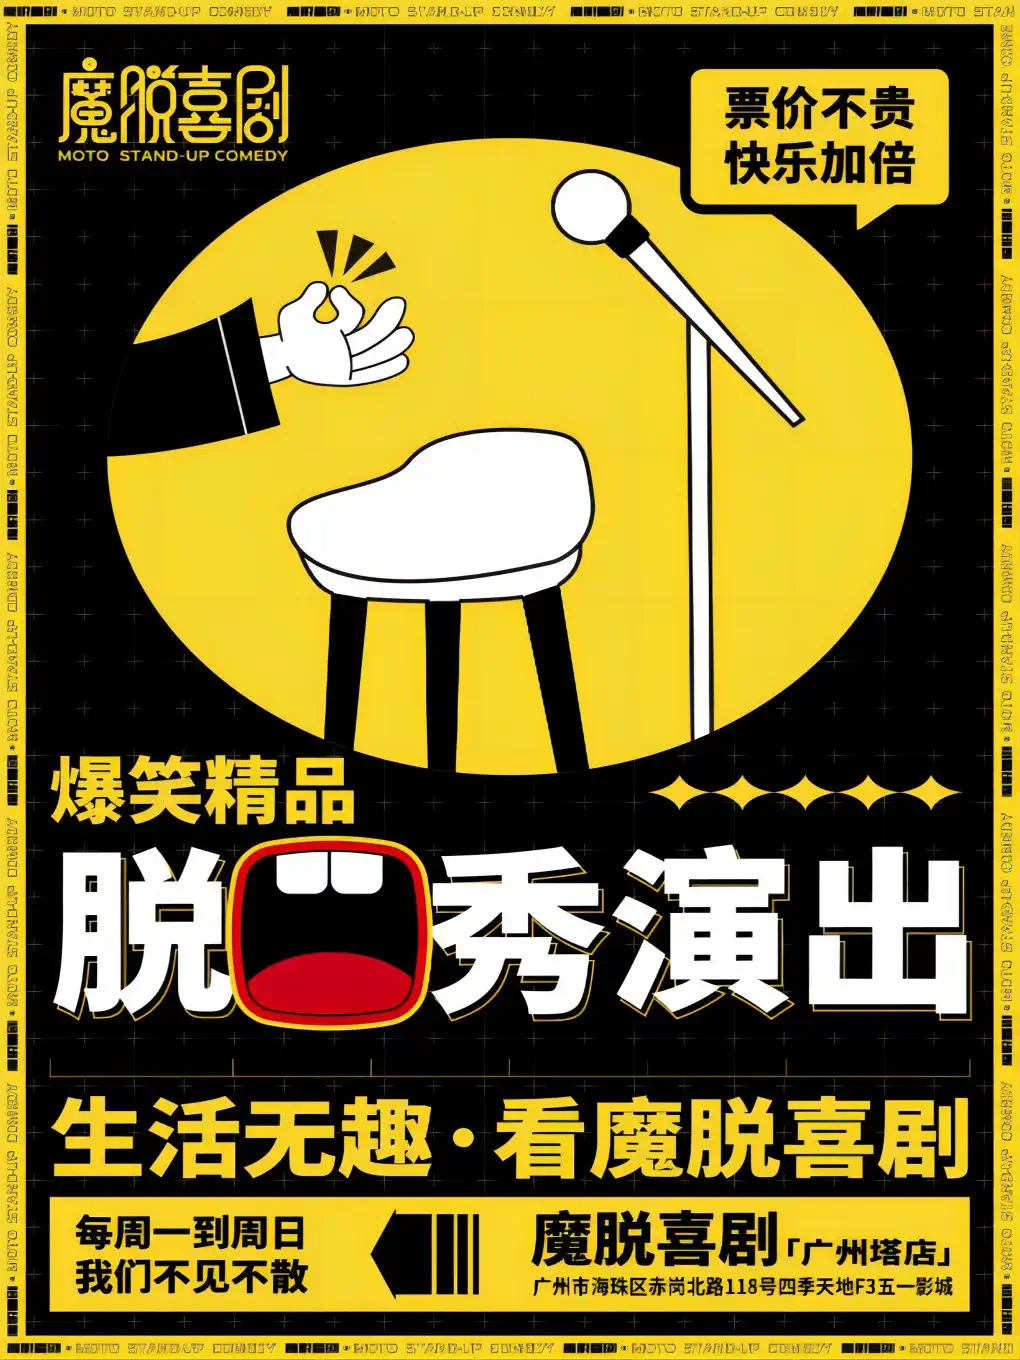 【魔脱喜剧】丨广州塔五一影城店丨每周一至周日爆笑欢乐脱口秀